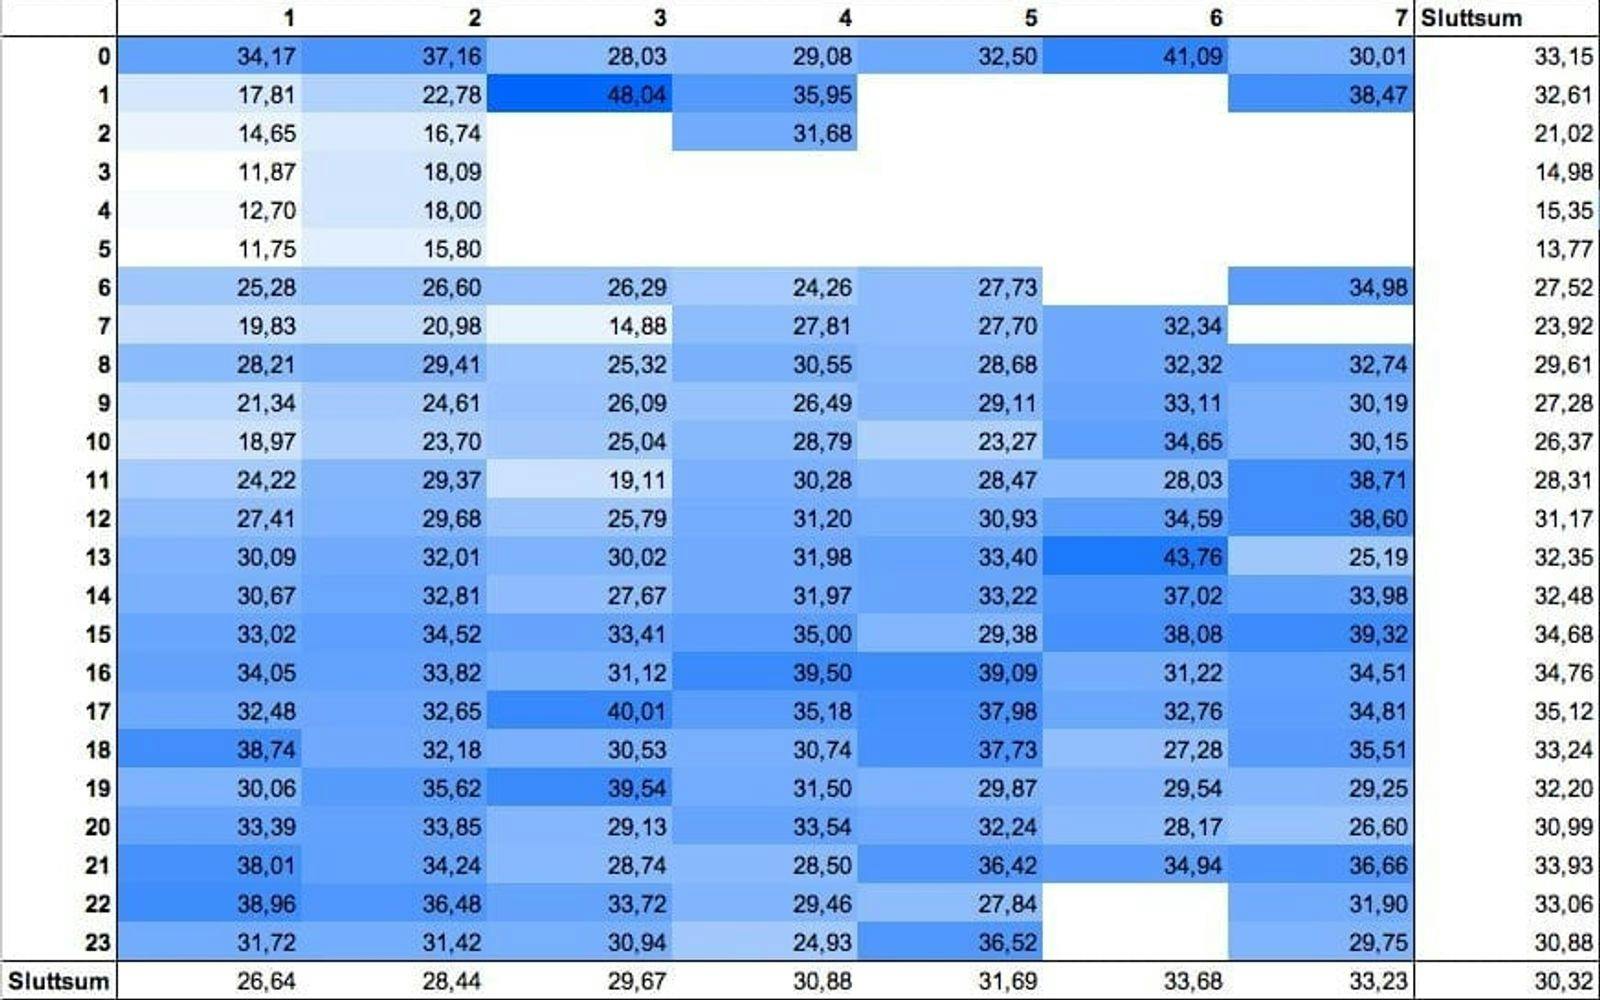 Tabellen viser snittet på åpningsrate per time per døgn